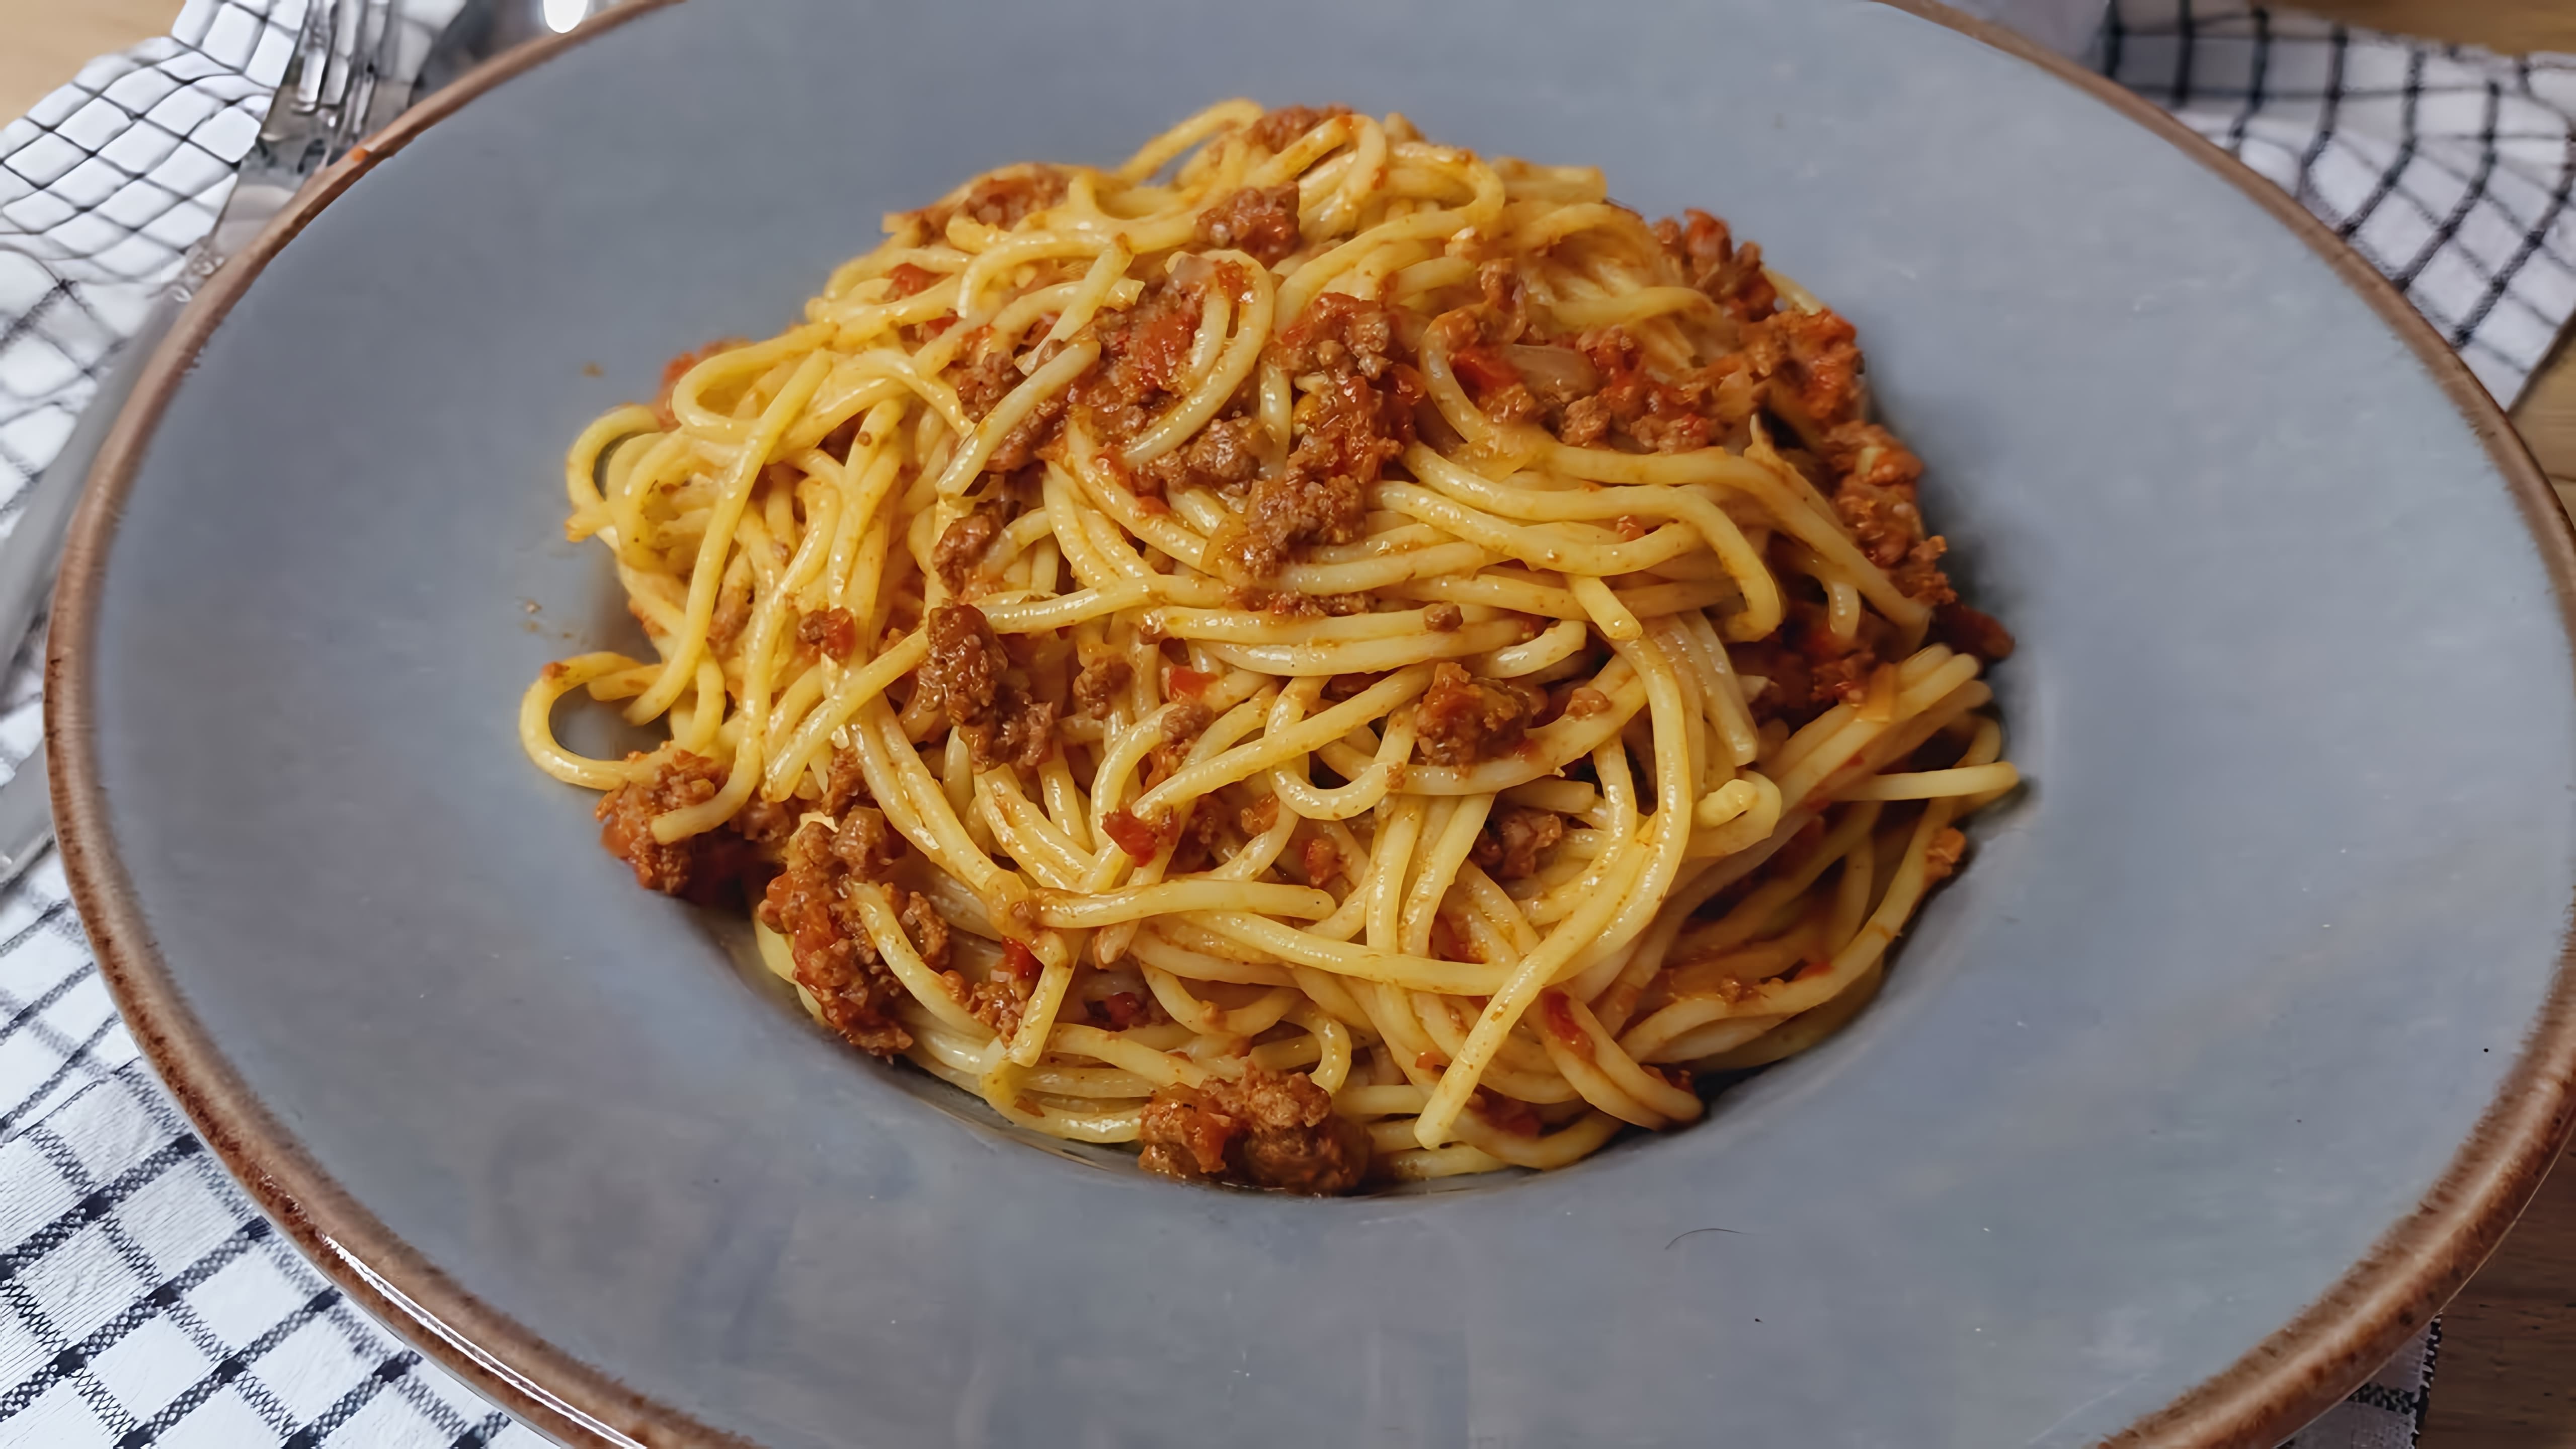 В этом видео демонстрируется рецепт приготовления спагетти с фаршем